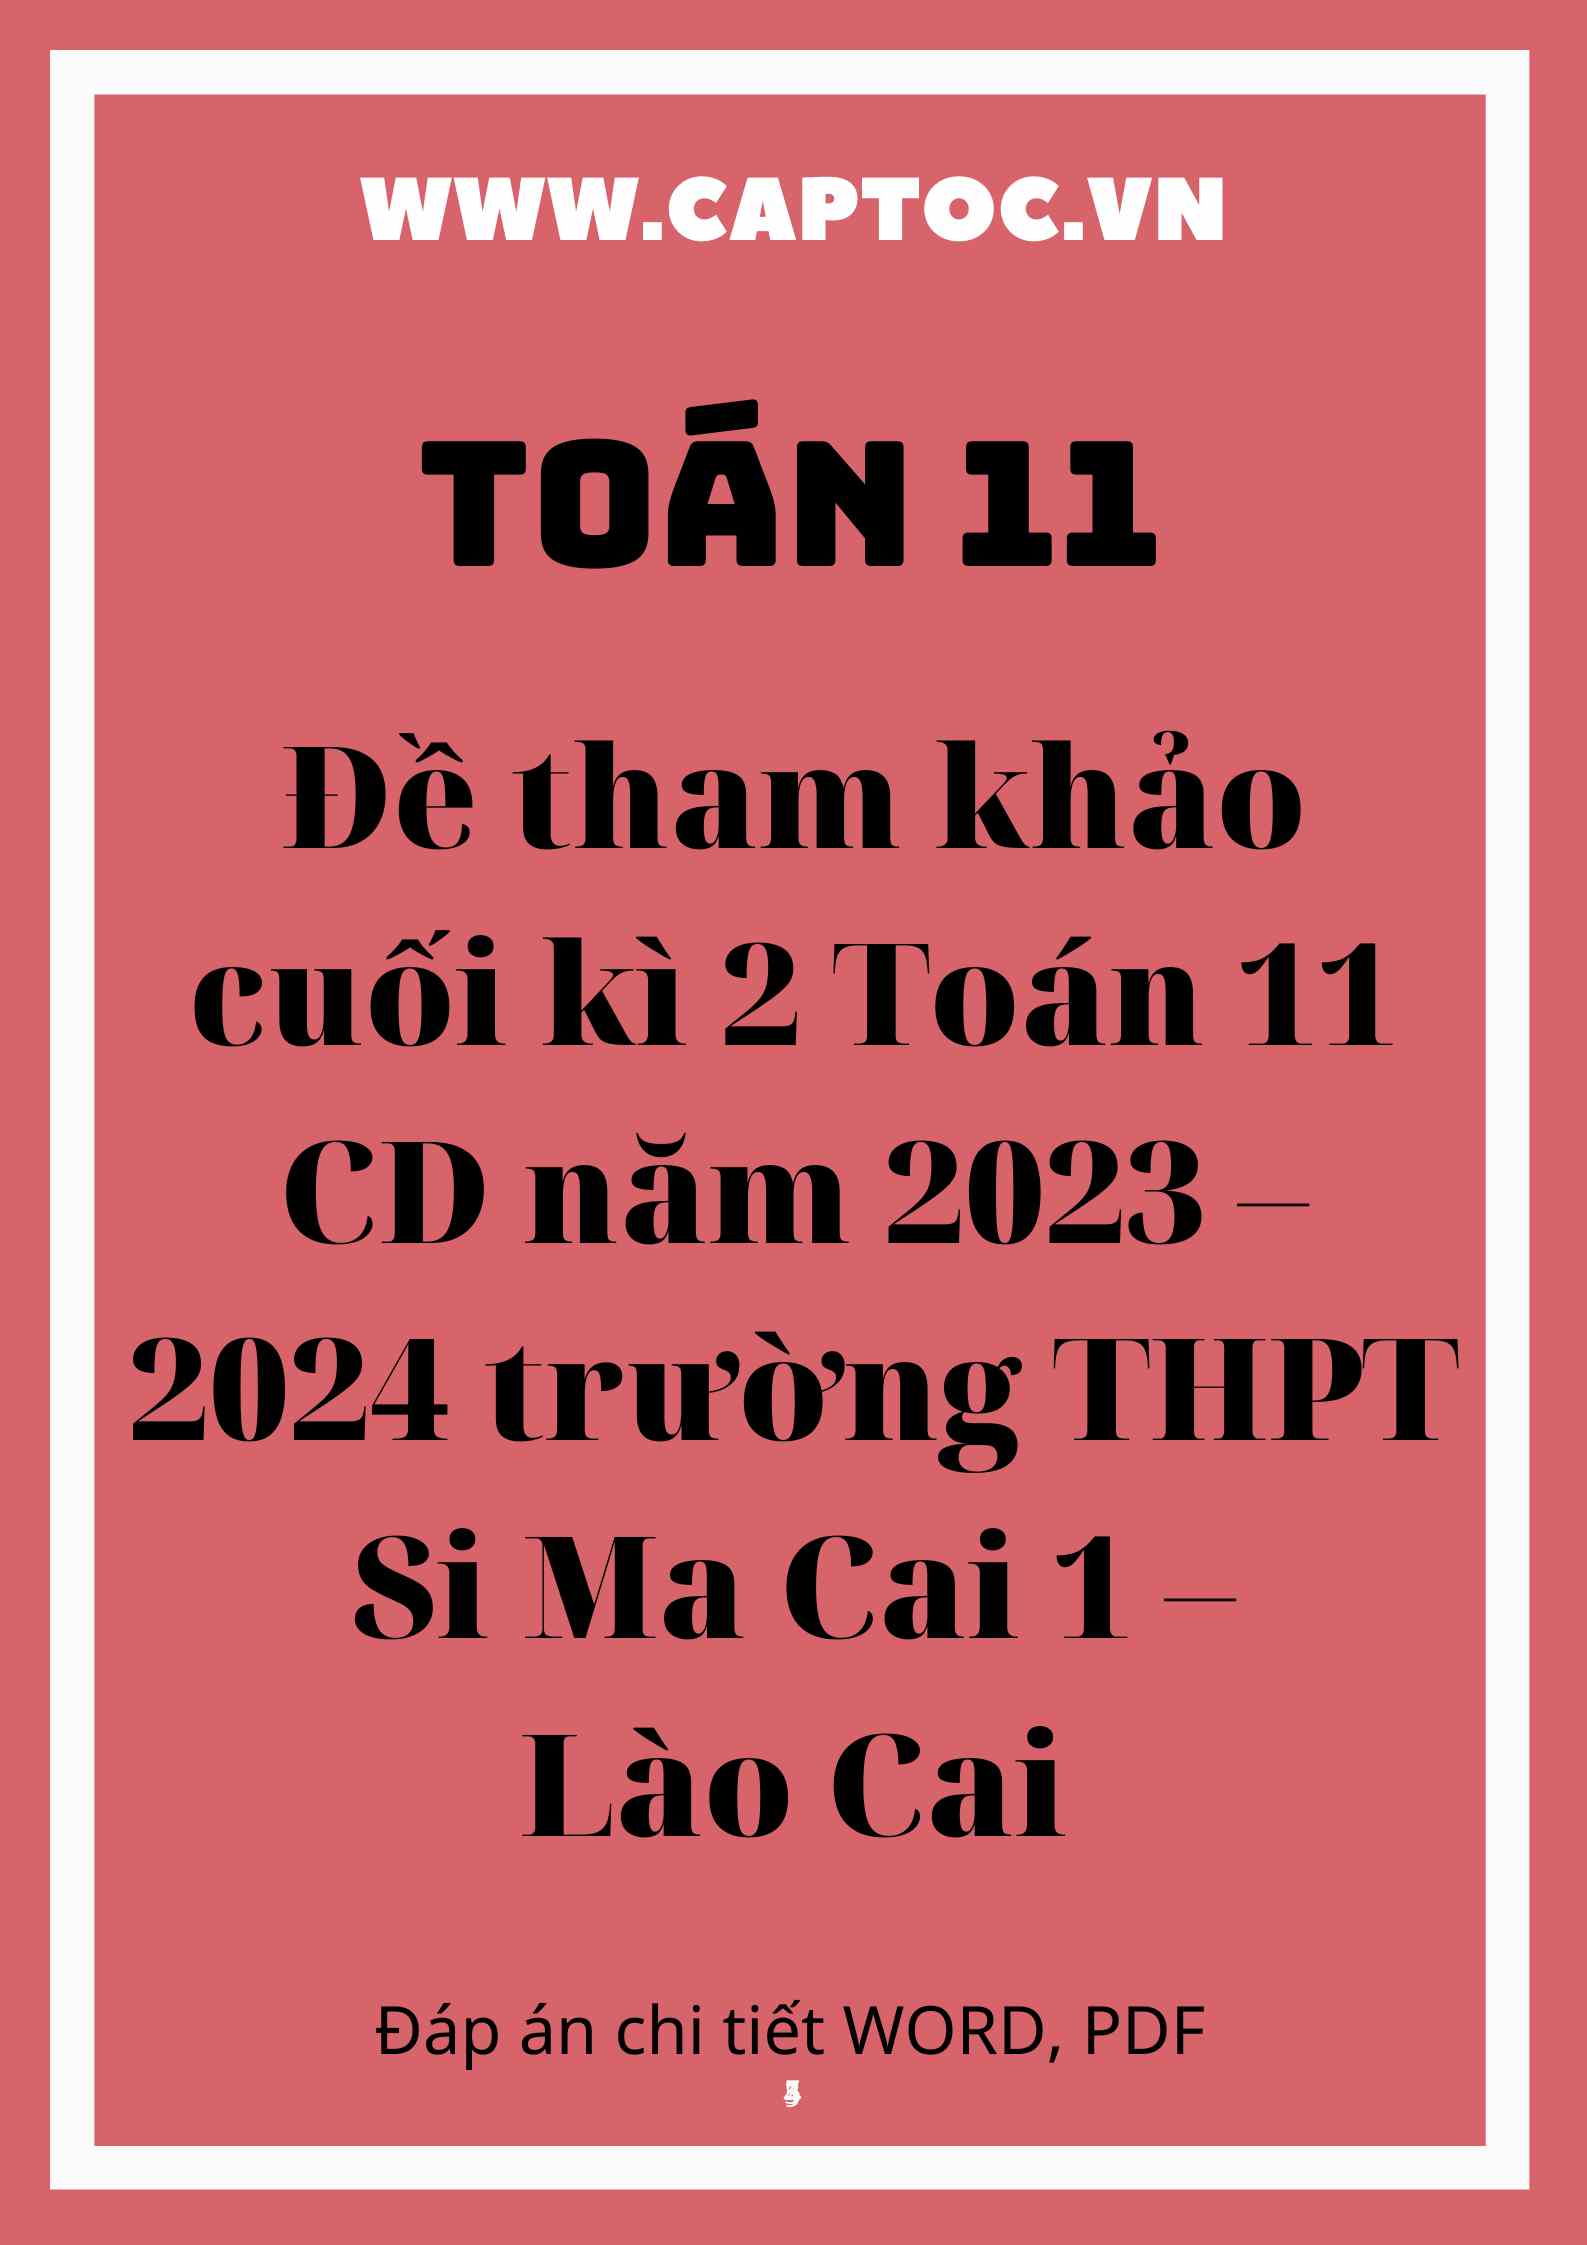 Đề tham khảo cuối kì 2 Toán 11 CD năm 2023 – 2024 trường THPT Si Ma Cai 1 – Lào Cai